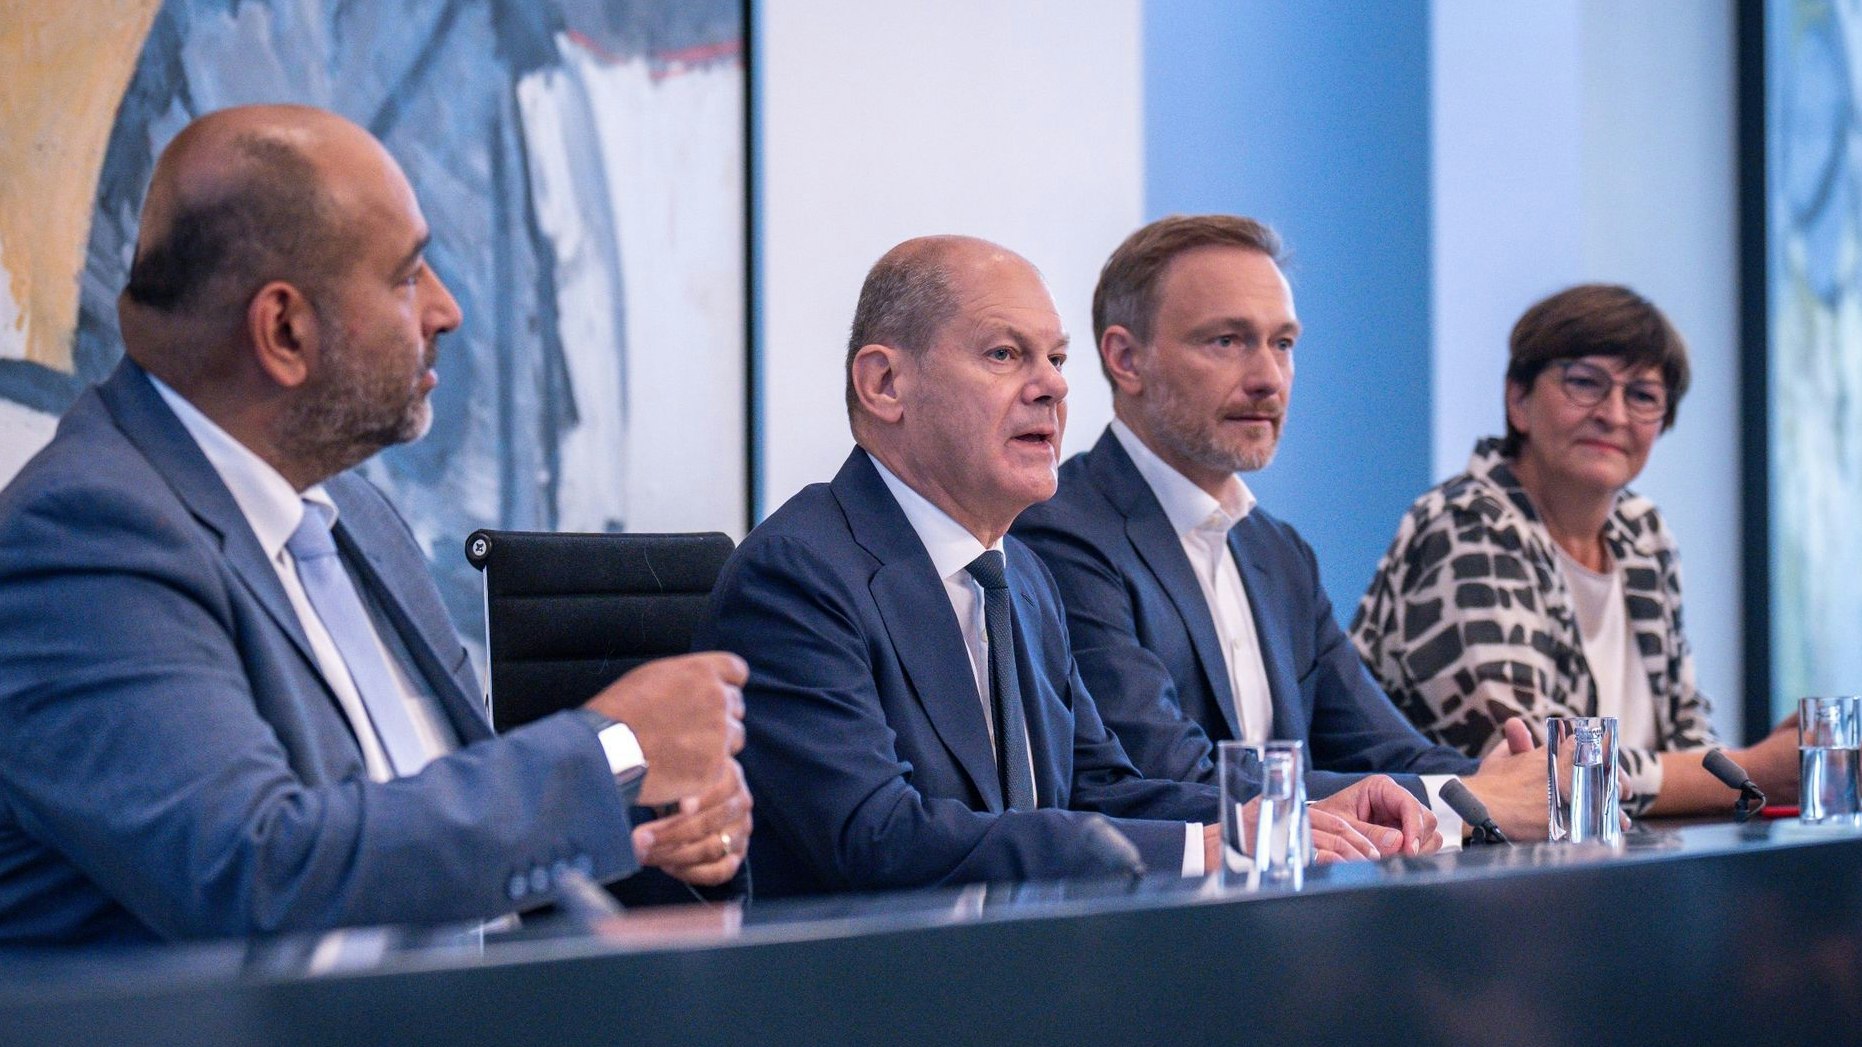 Der Koalitionsausschuss um Bundeskanzler Olaf Scholz (SPD, 2. von links) stellt die Verhandlungsergebnisse vor. Foto: dpa/Kappeler